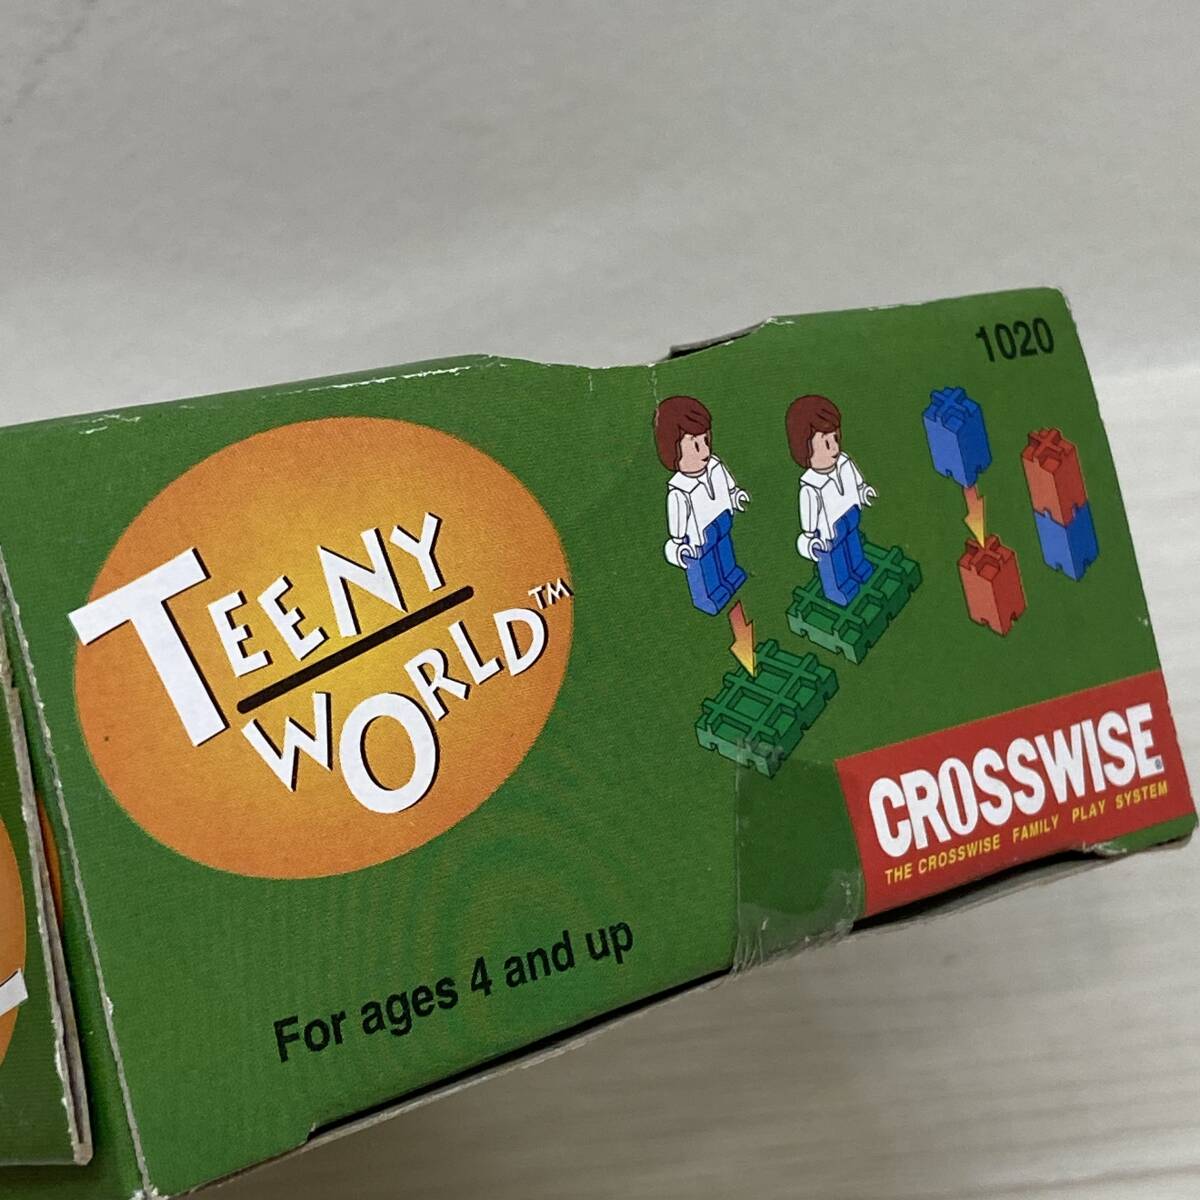 Σ возможно не использовался TEENY WORLD 1020 блок за границей развивающая игрушка красочный игрушка игрушка рыбалка ... миниатюра долгосрочное хранение ΣN52423